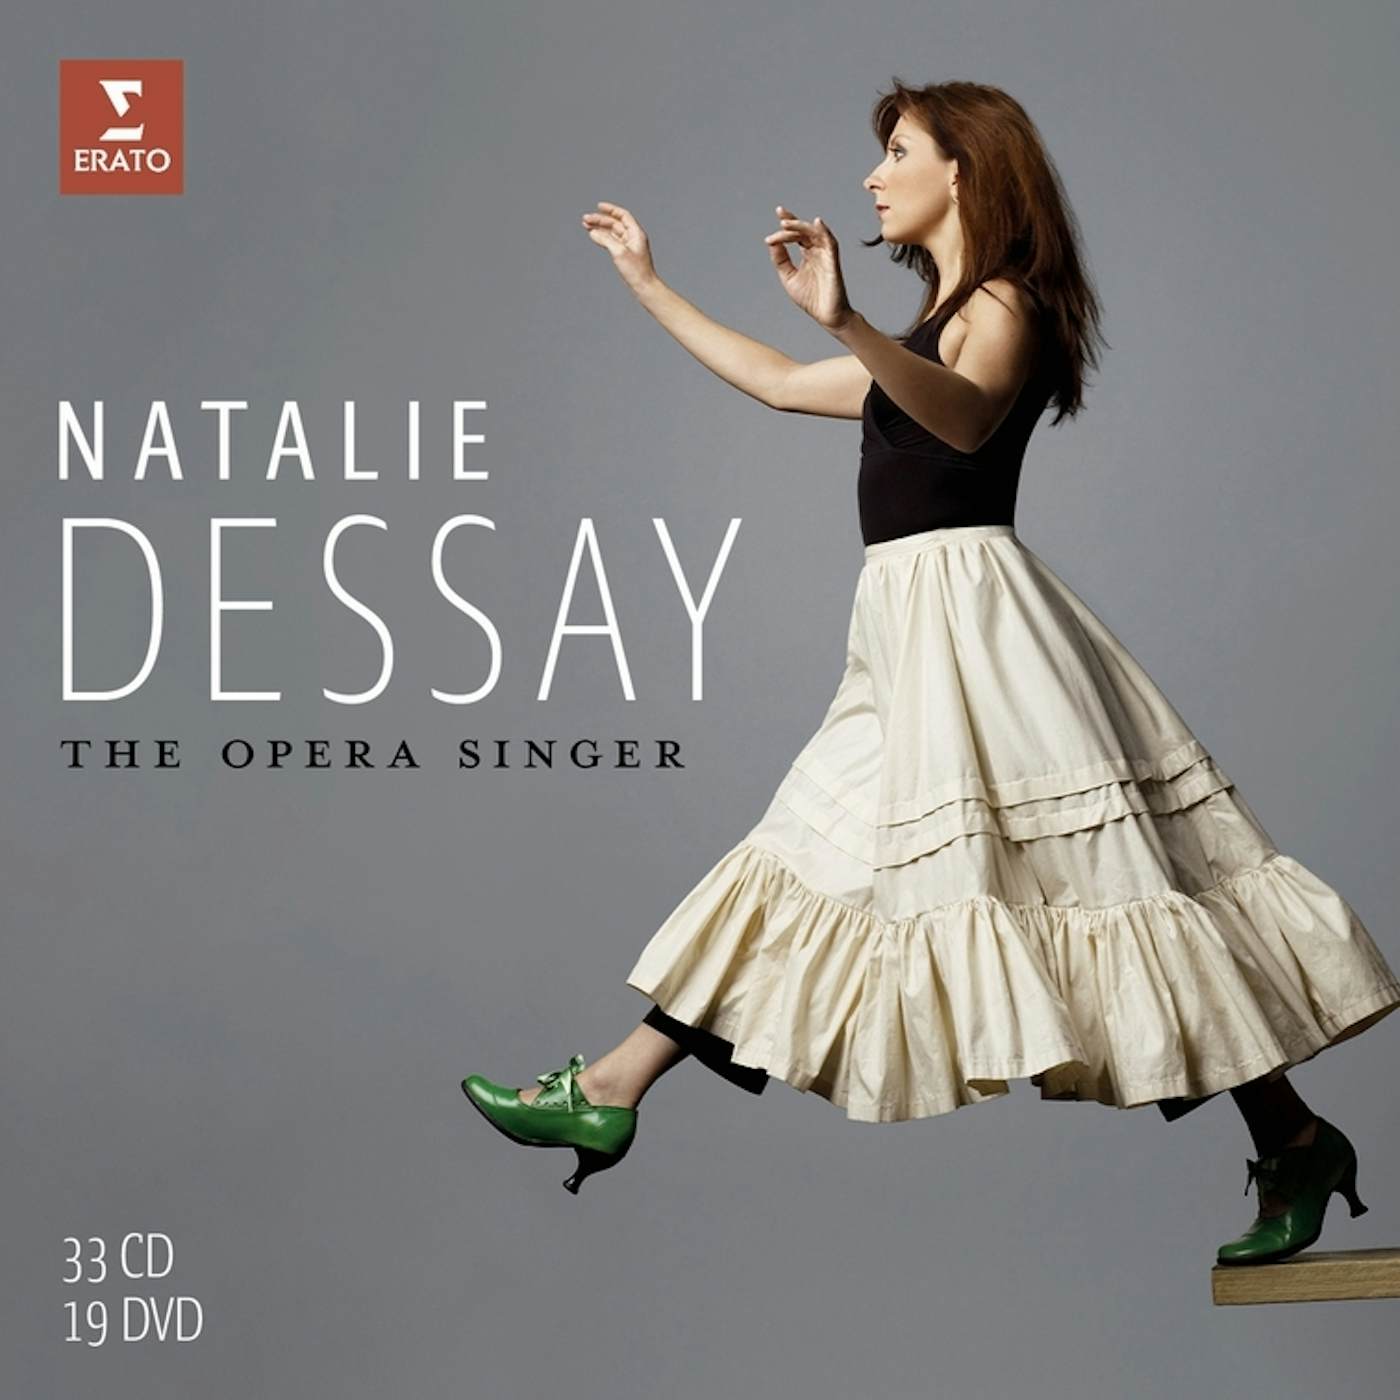 Natalie Dessay OPERA SINGER (COMPLETE OPERAS & OPERAS ARIAS CD